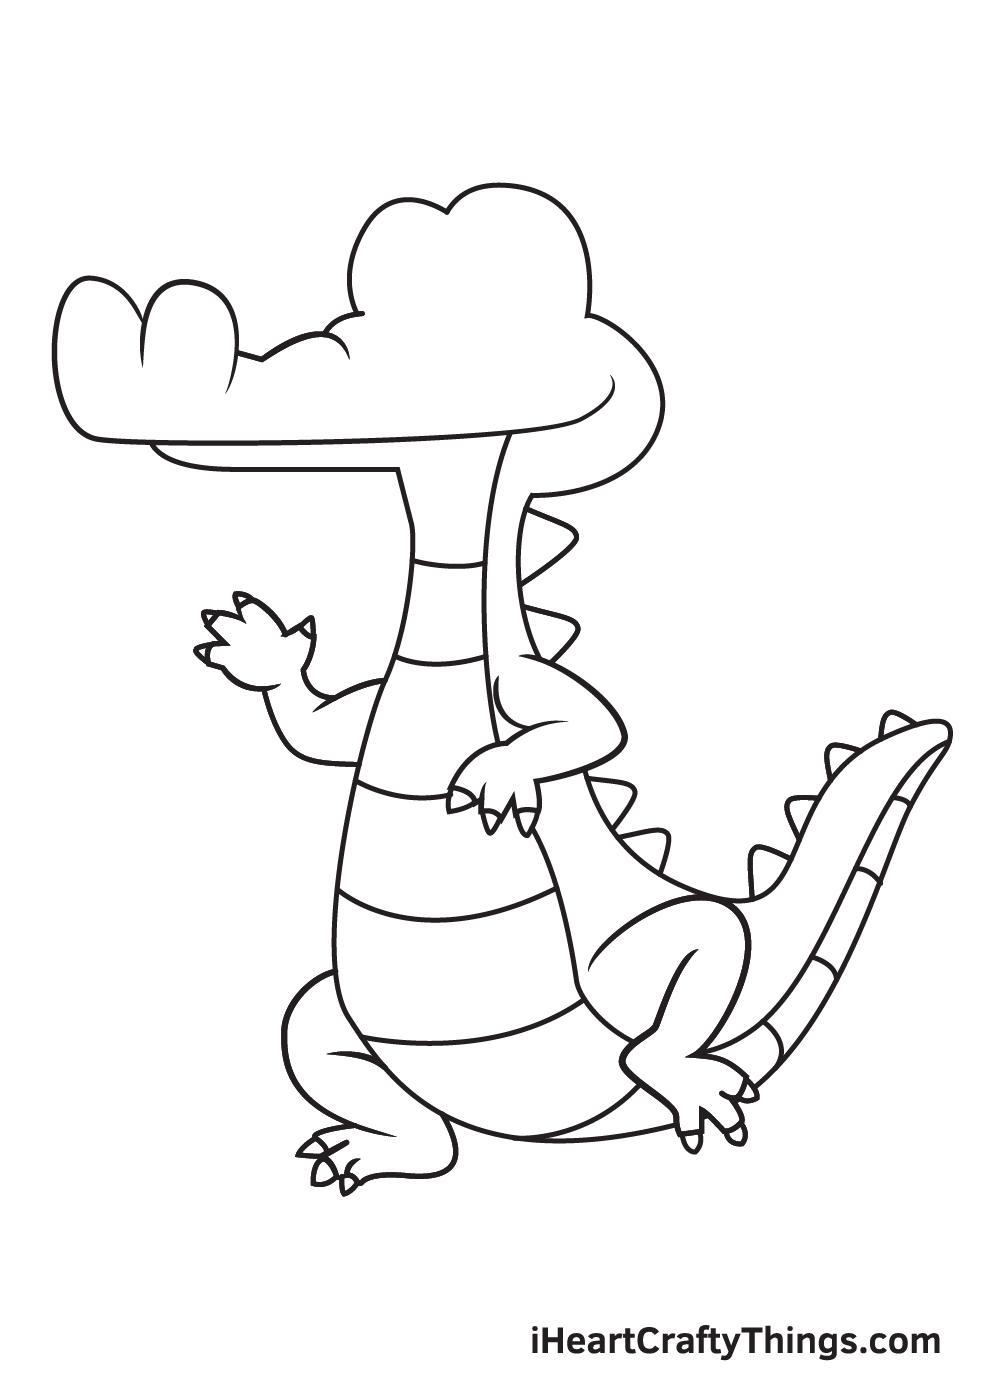 Vẽ cá sấu - Bước 8